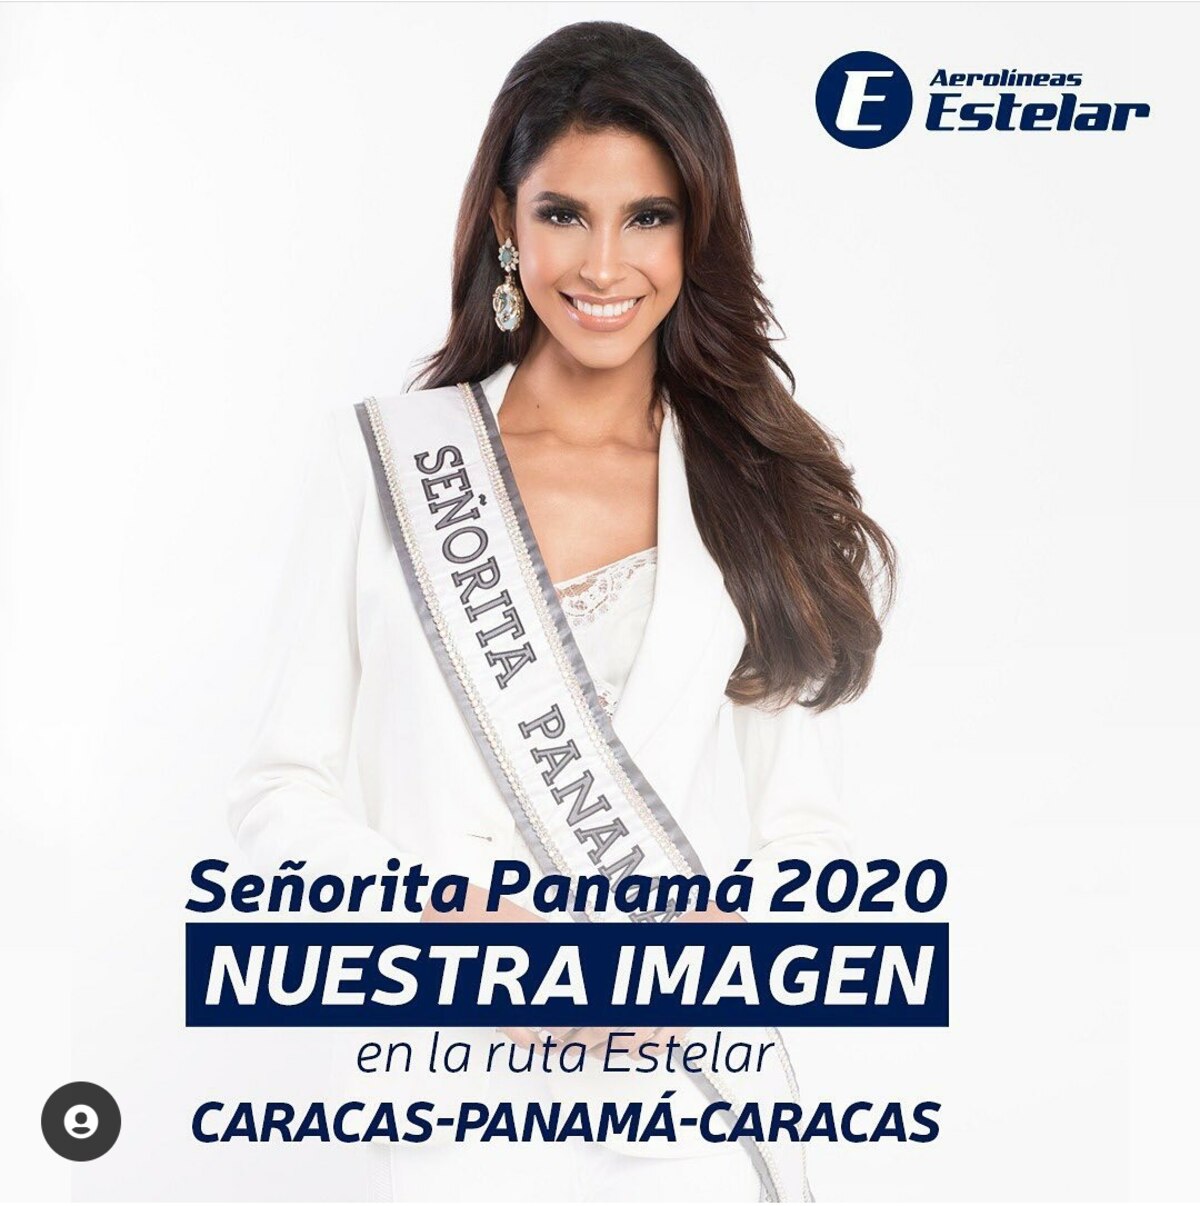 La Señorita Panamá es la imagen de aerolínea venezolana 